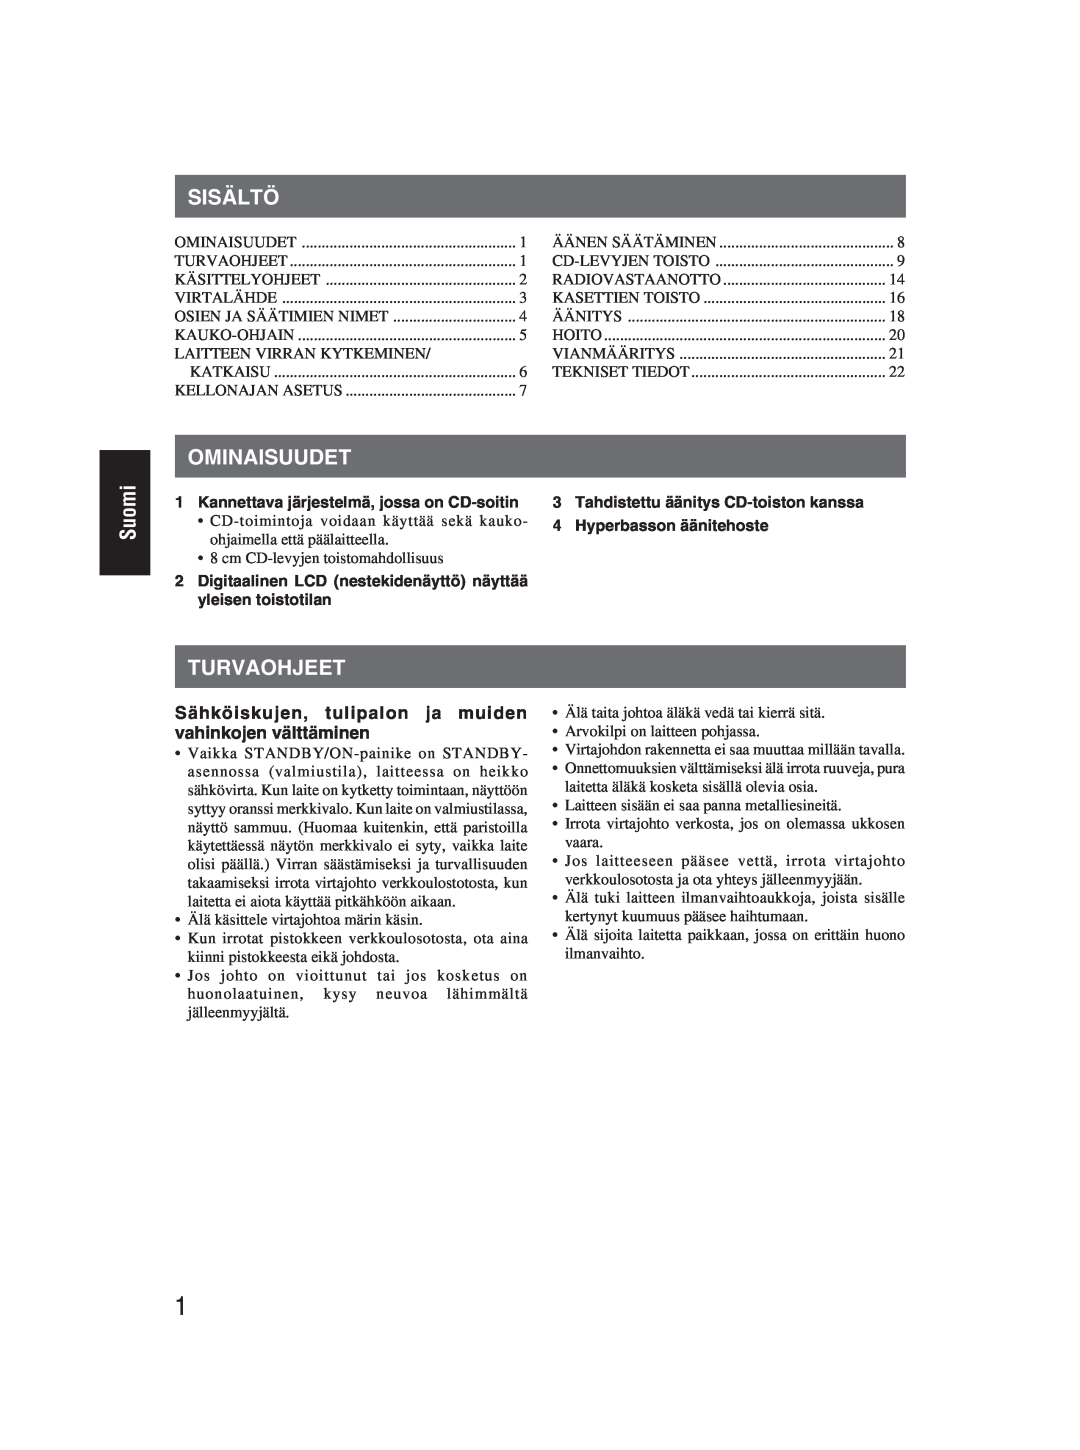 JVC RC-EX25S manual Sisältö, Suomi, Ominaisuudet, Turvaohjeet, Sähköiskujen, tulipalon ja muiden vahinkojen välttäminen 